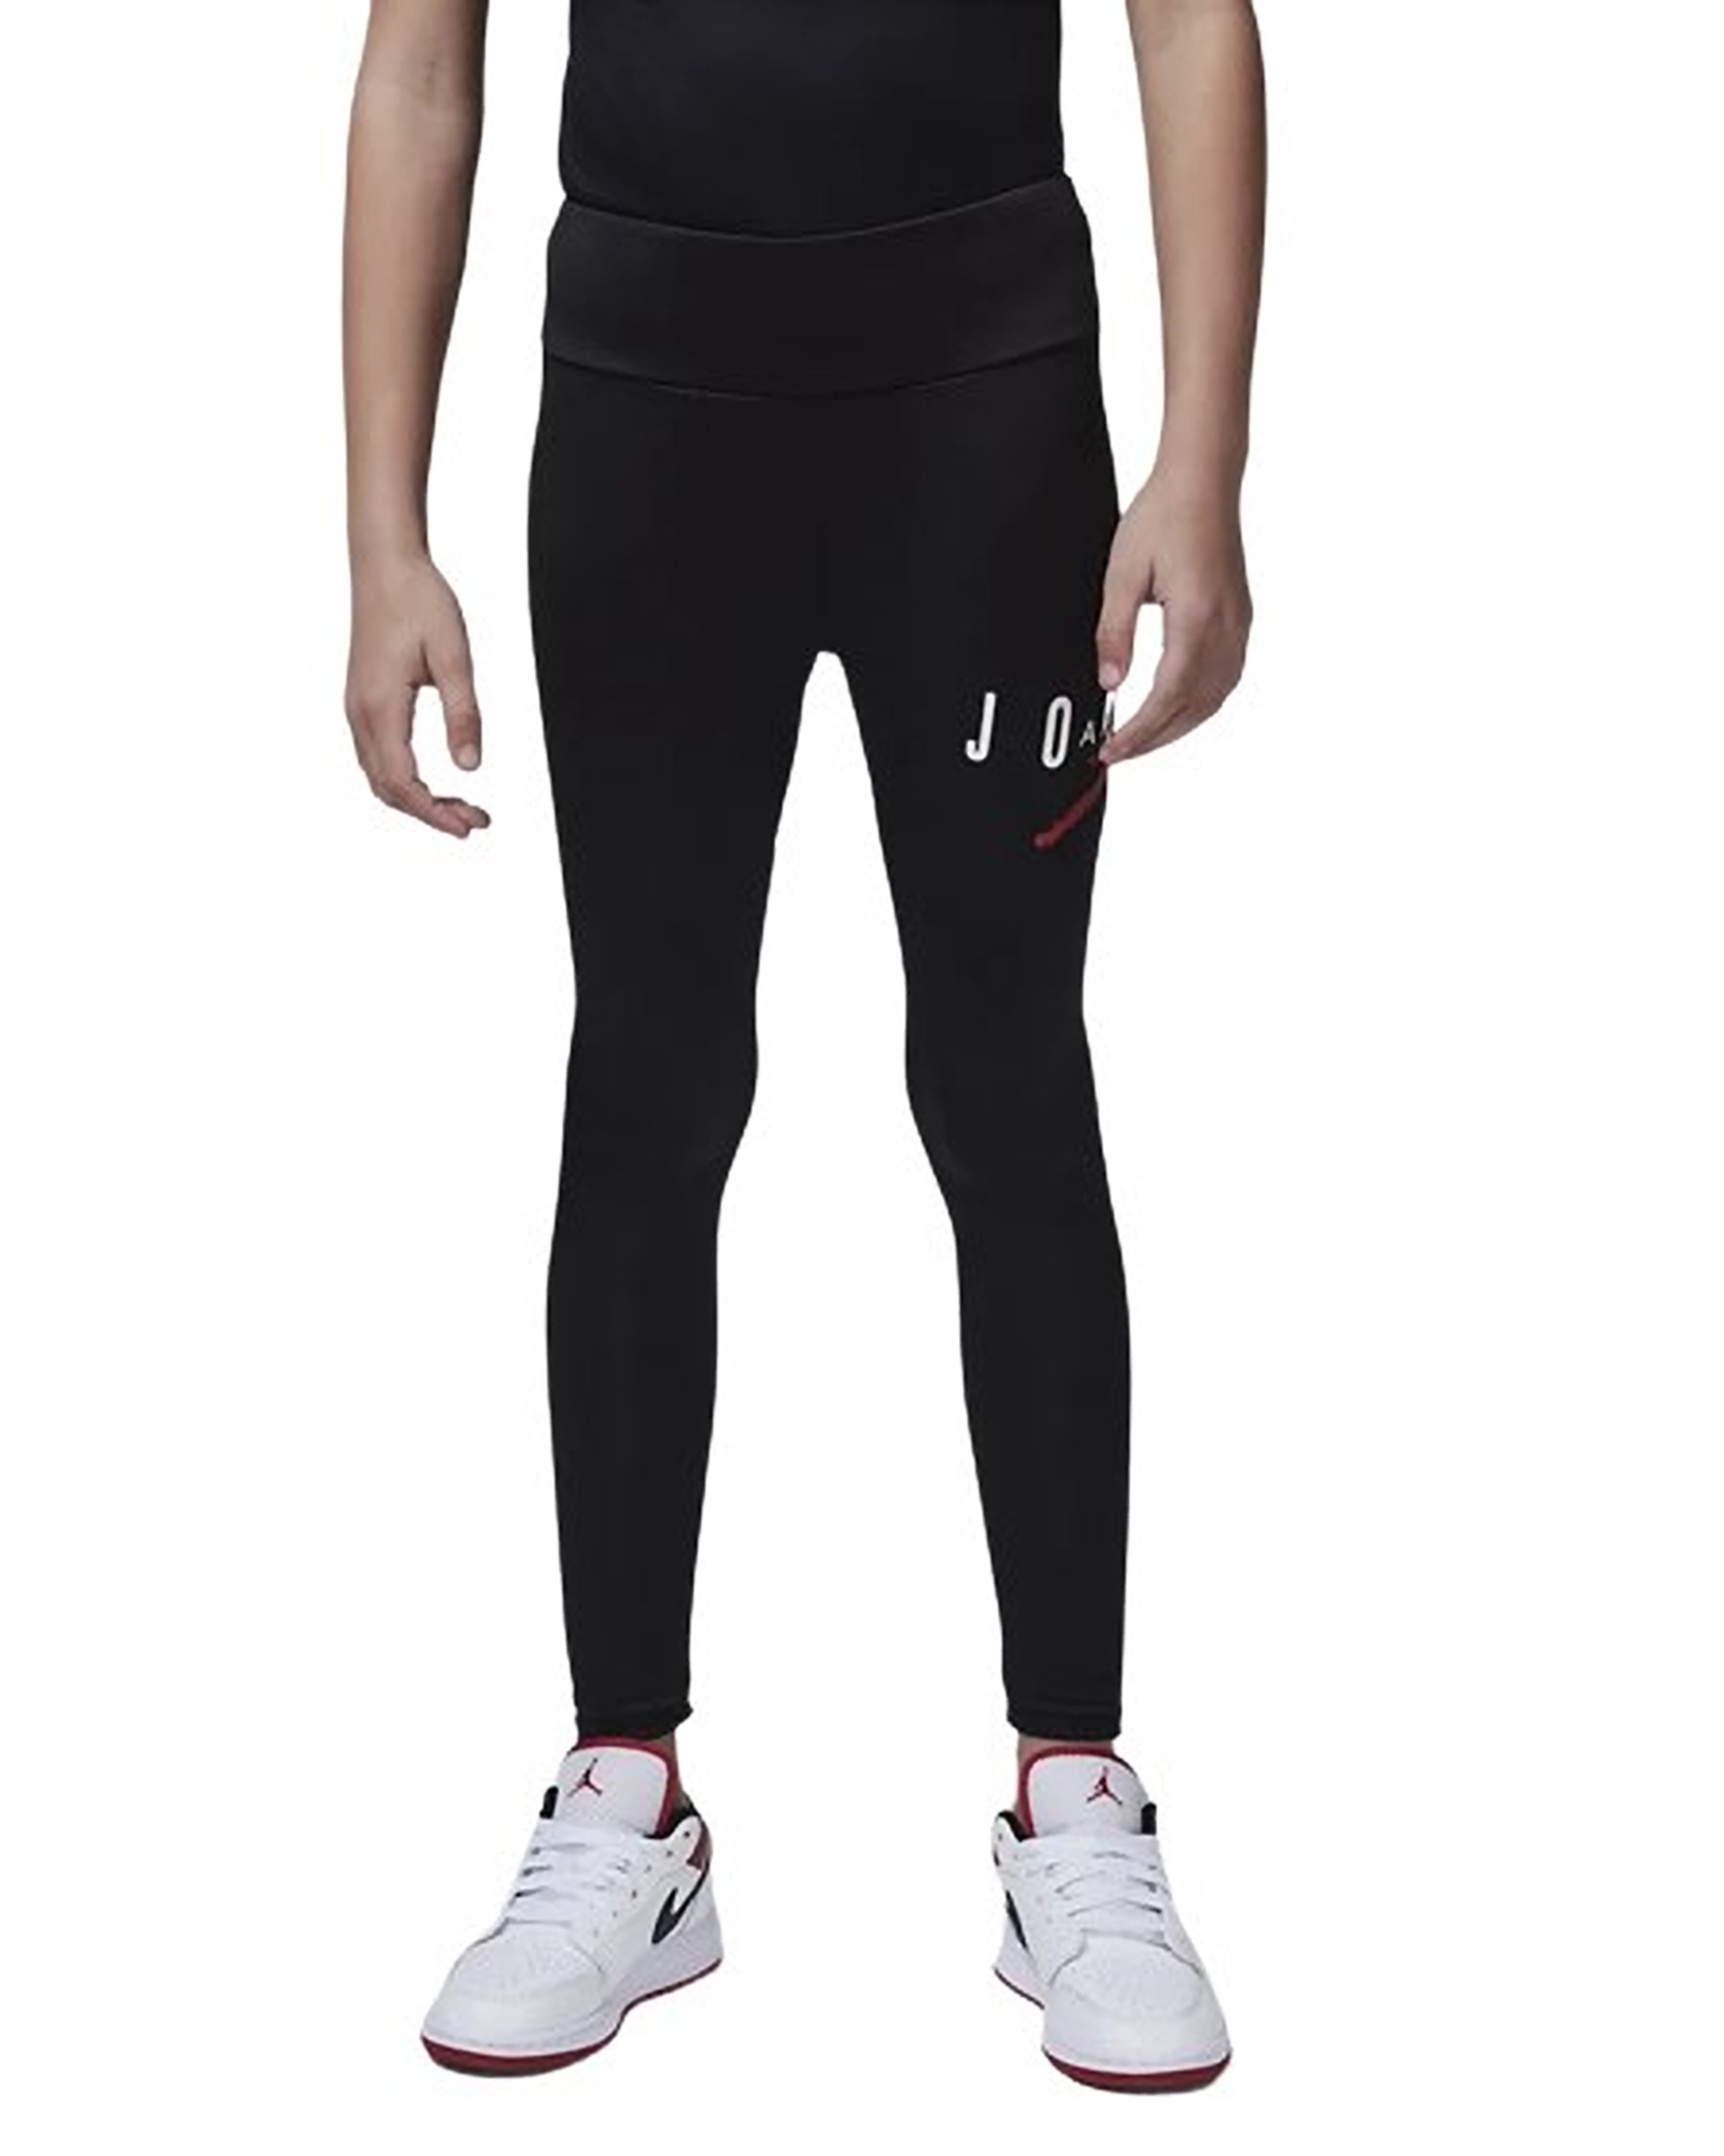 https://www.manelsanchez.pt/uploads/media/images/jordan-girls-jumpman-sustainable-leggings-black-1.jpg